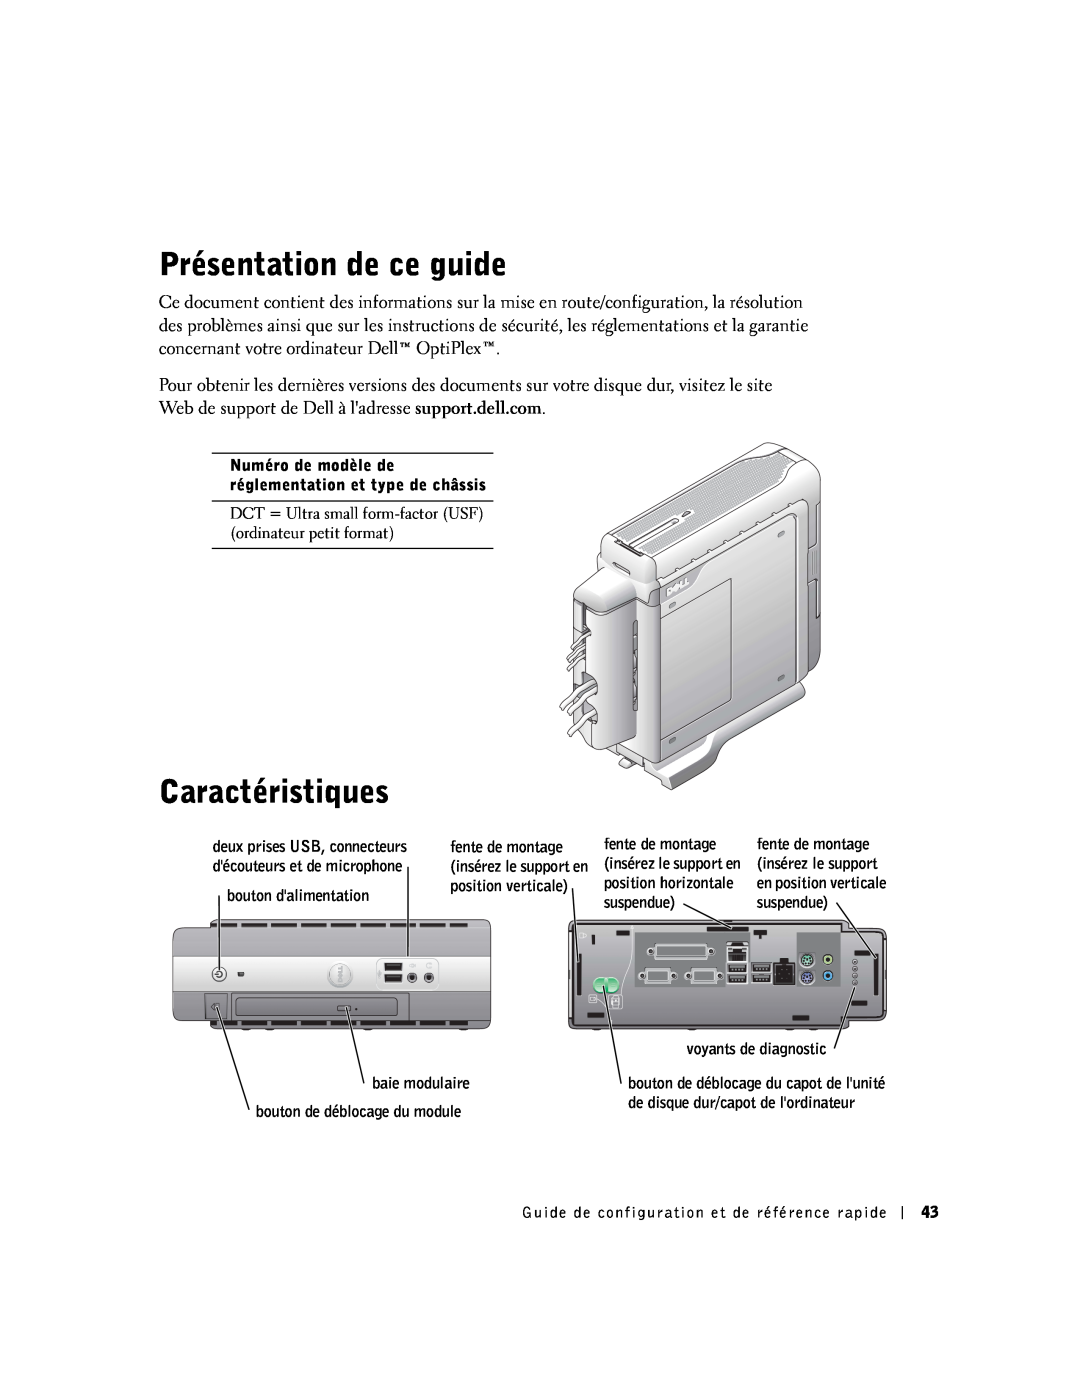 Dell SX Présentation de ce guide, Caractéristiques, Numéro de modèle de réglementation et type de châssis, baie modulaire 